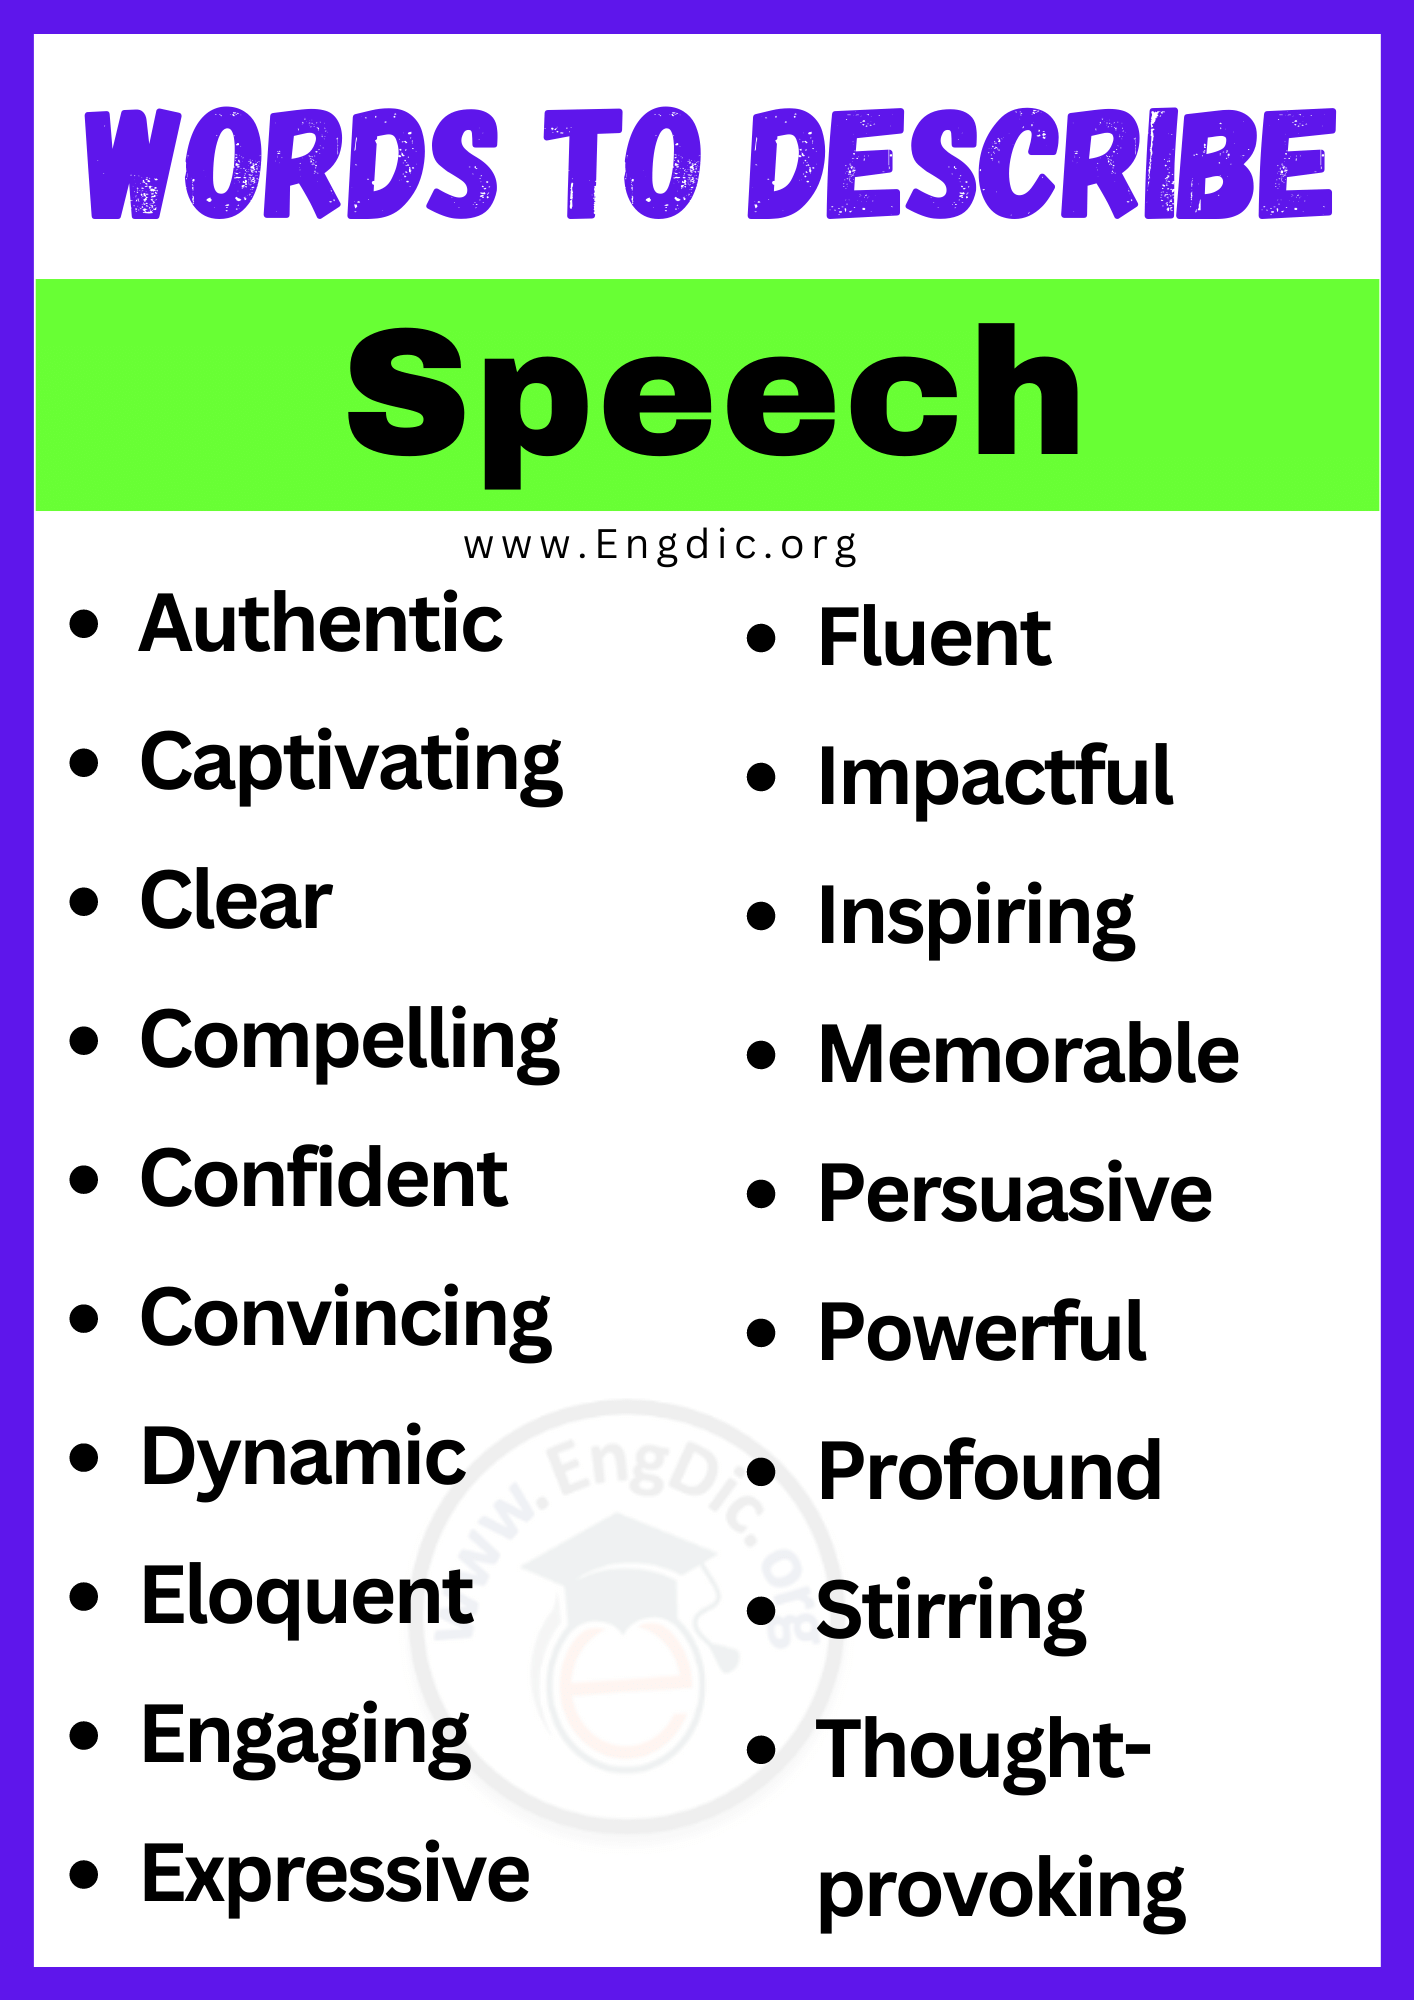 Words to Describe Speech